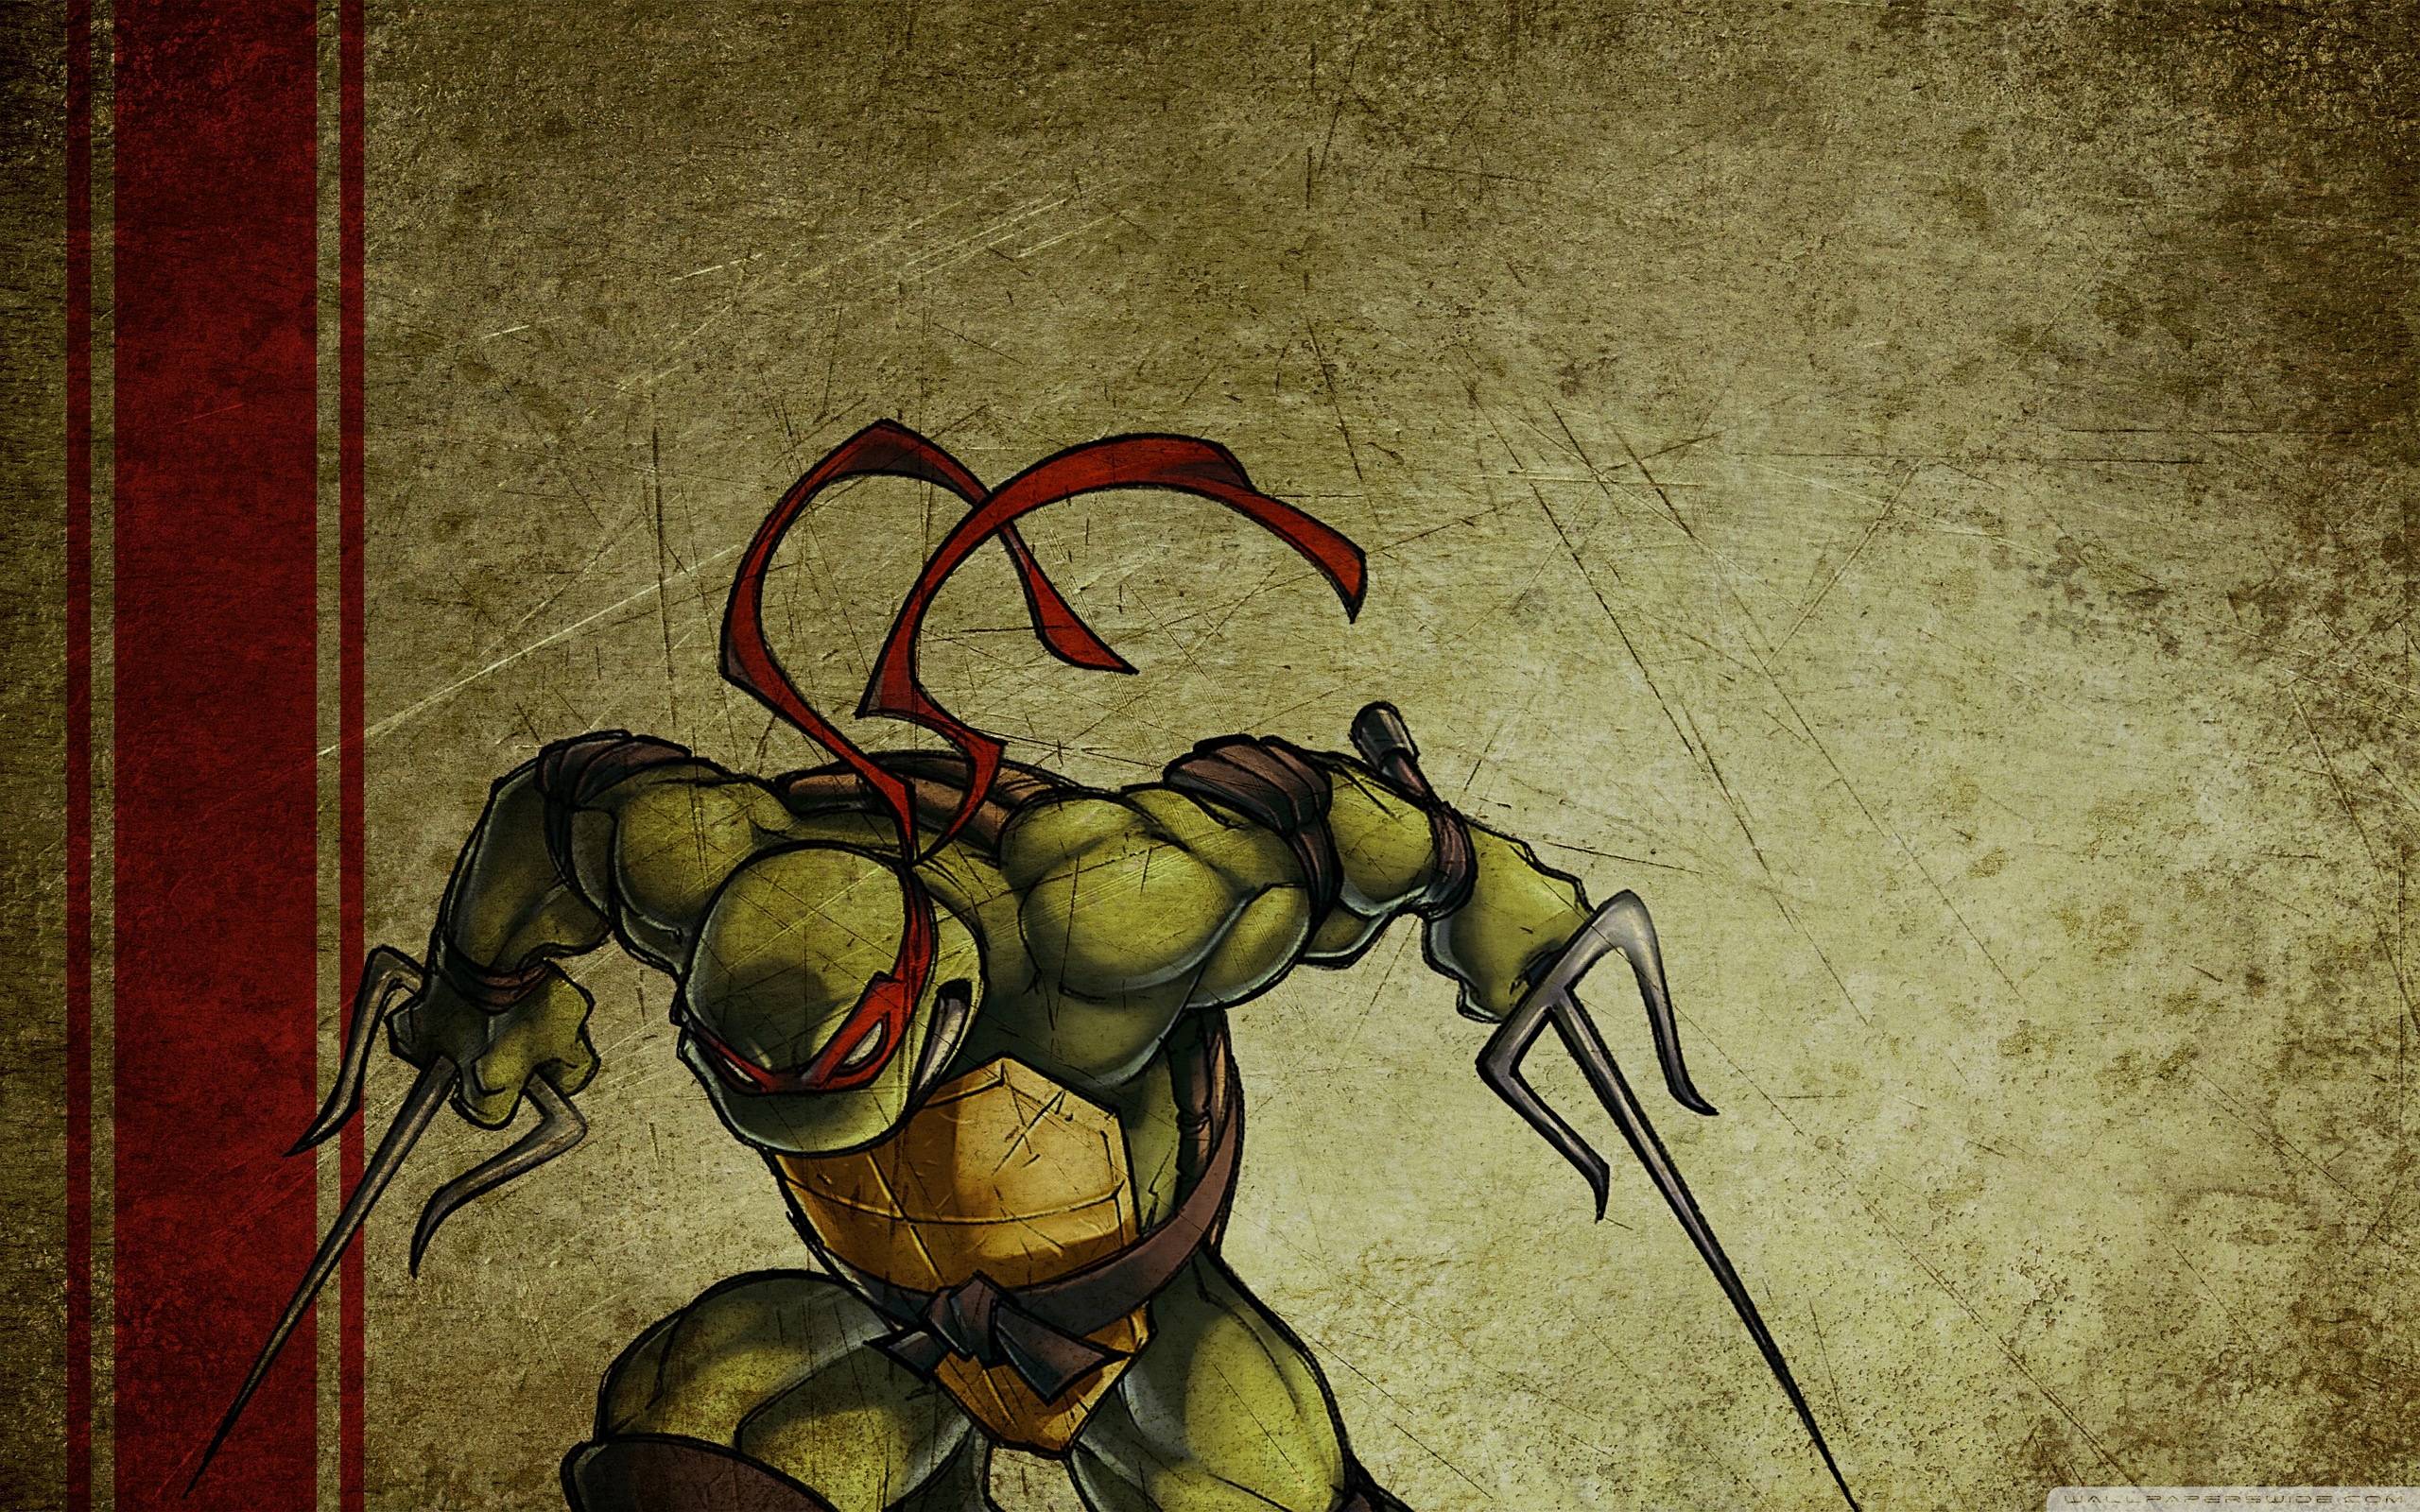 Raphael Teenage Mutant Ninja Turtles Wallpaper 2560x1600 px Free